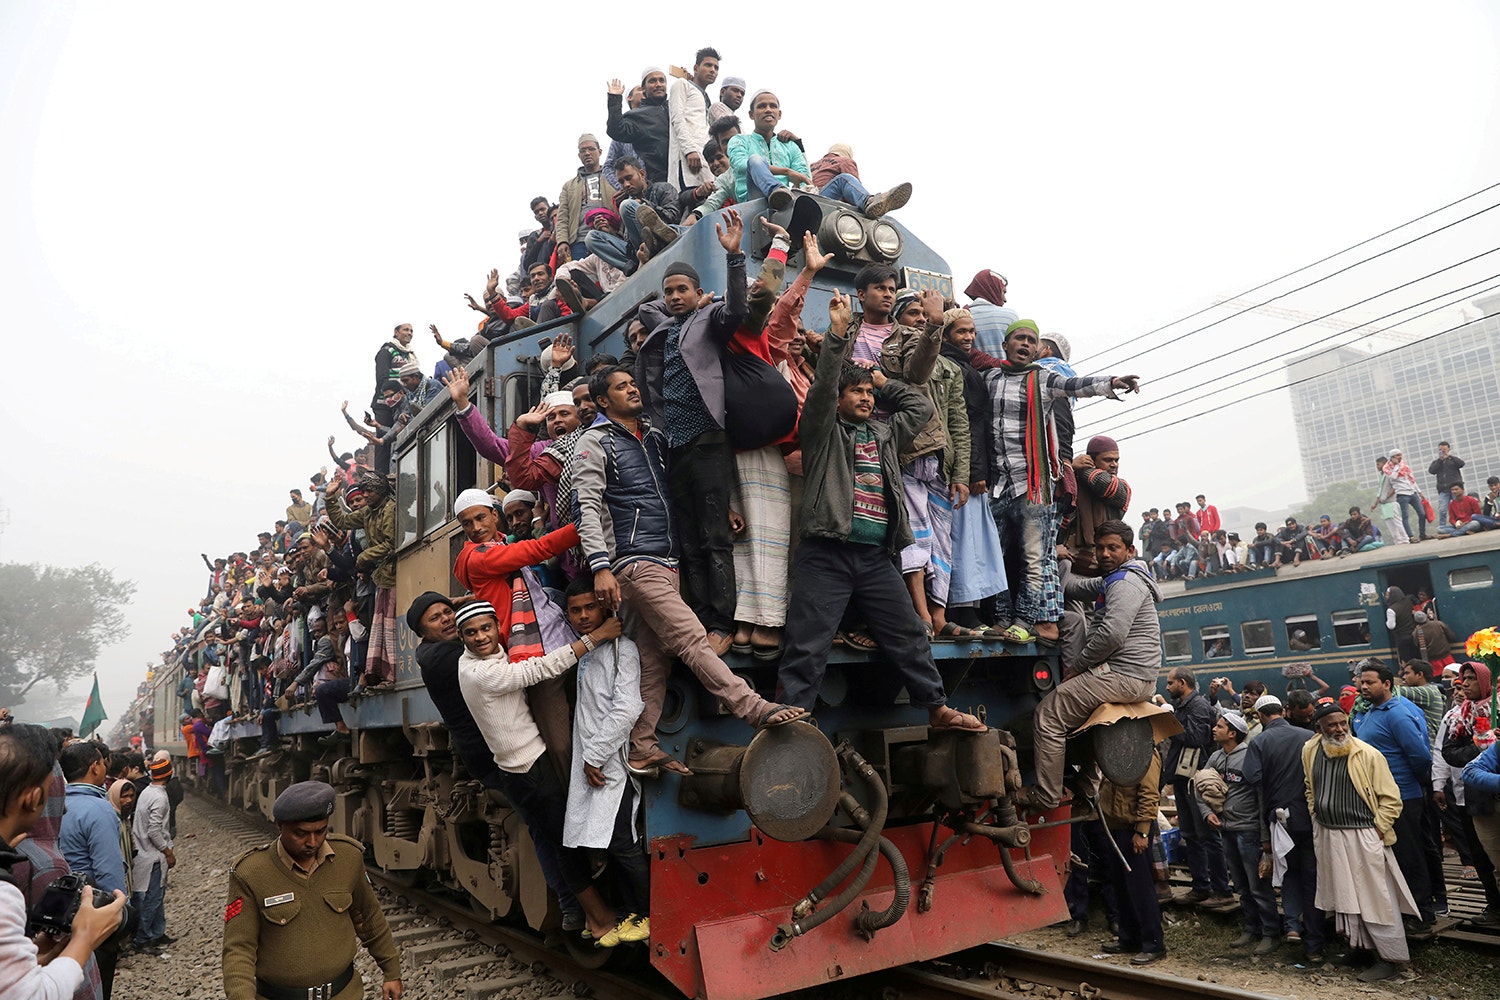  Comboios sobrelotados no Bangladesh /Mohammad Ponir Hossain - Reuters 